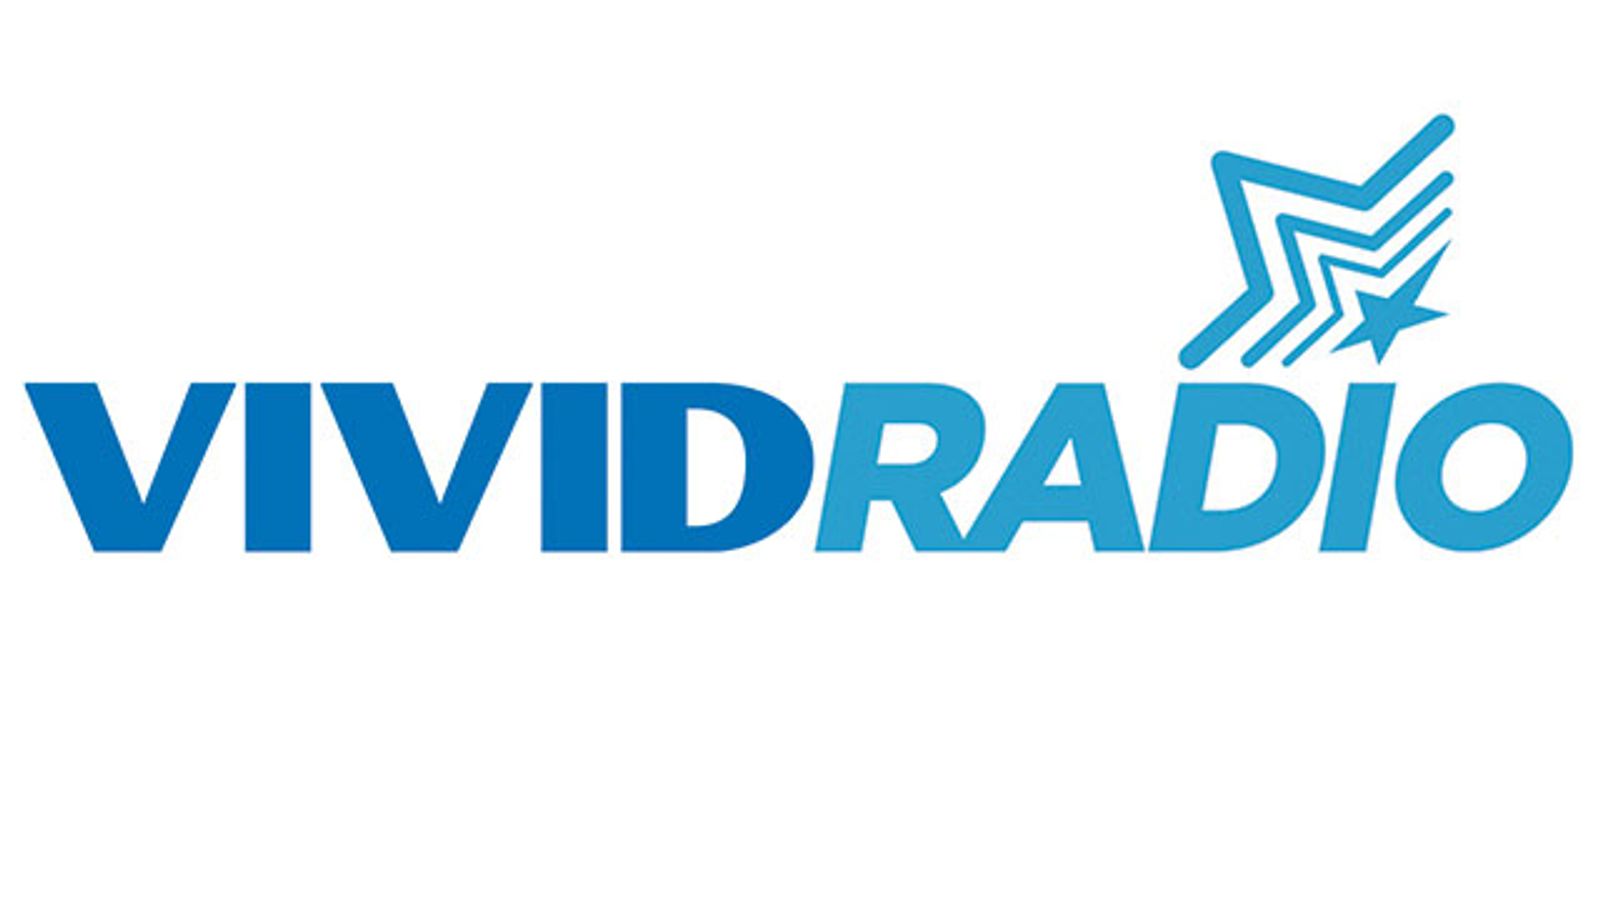 Vivid Radio Hosts Pick Their Own MVPs for Baseball Dream Team